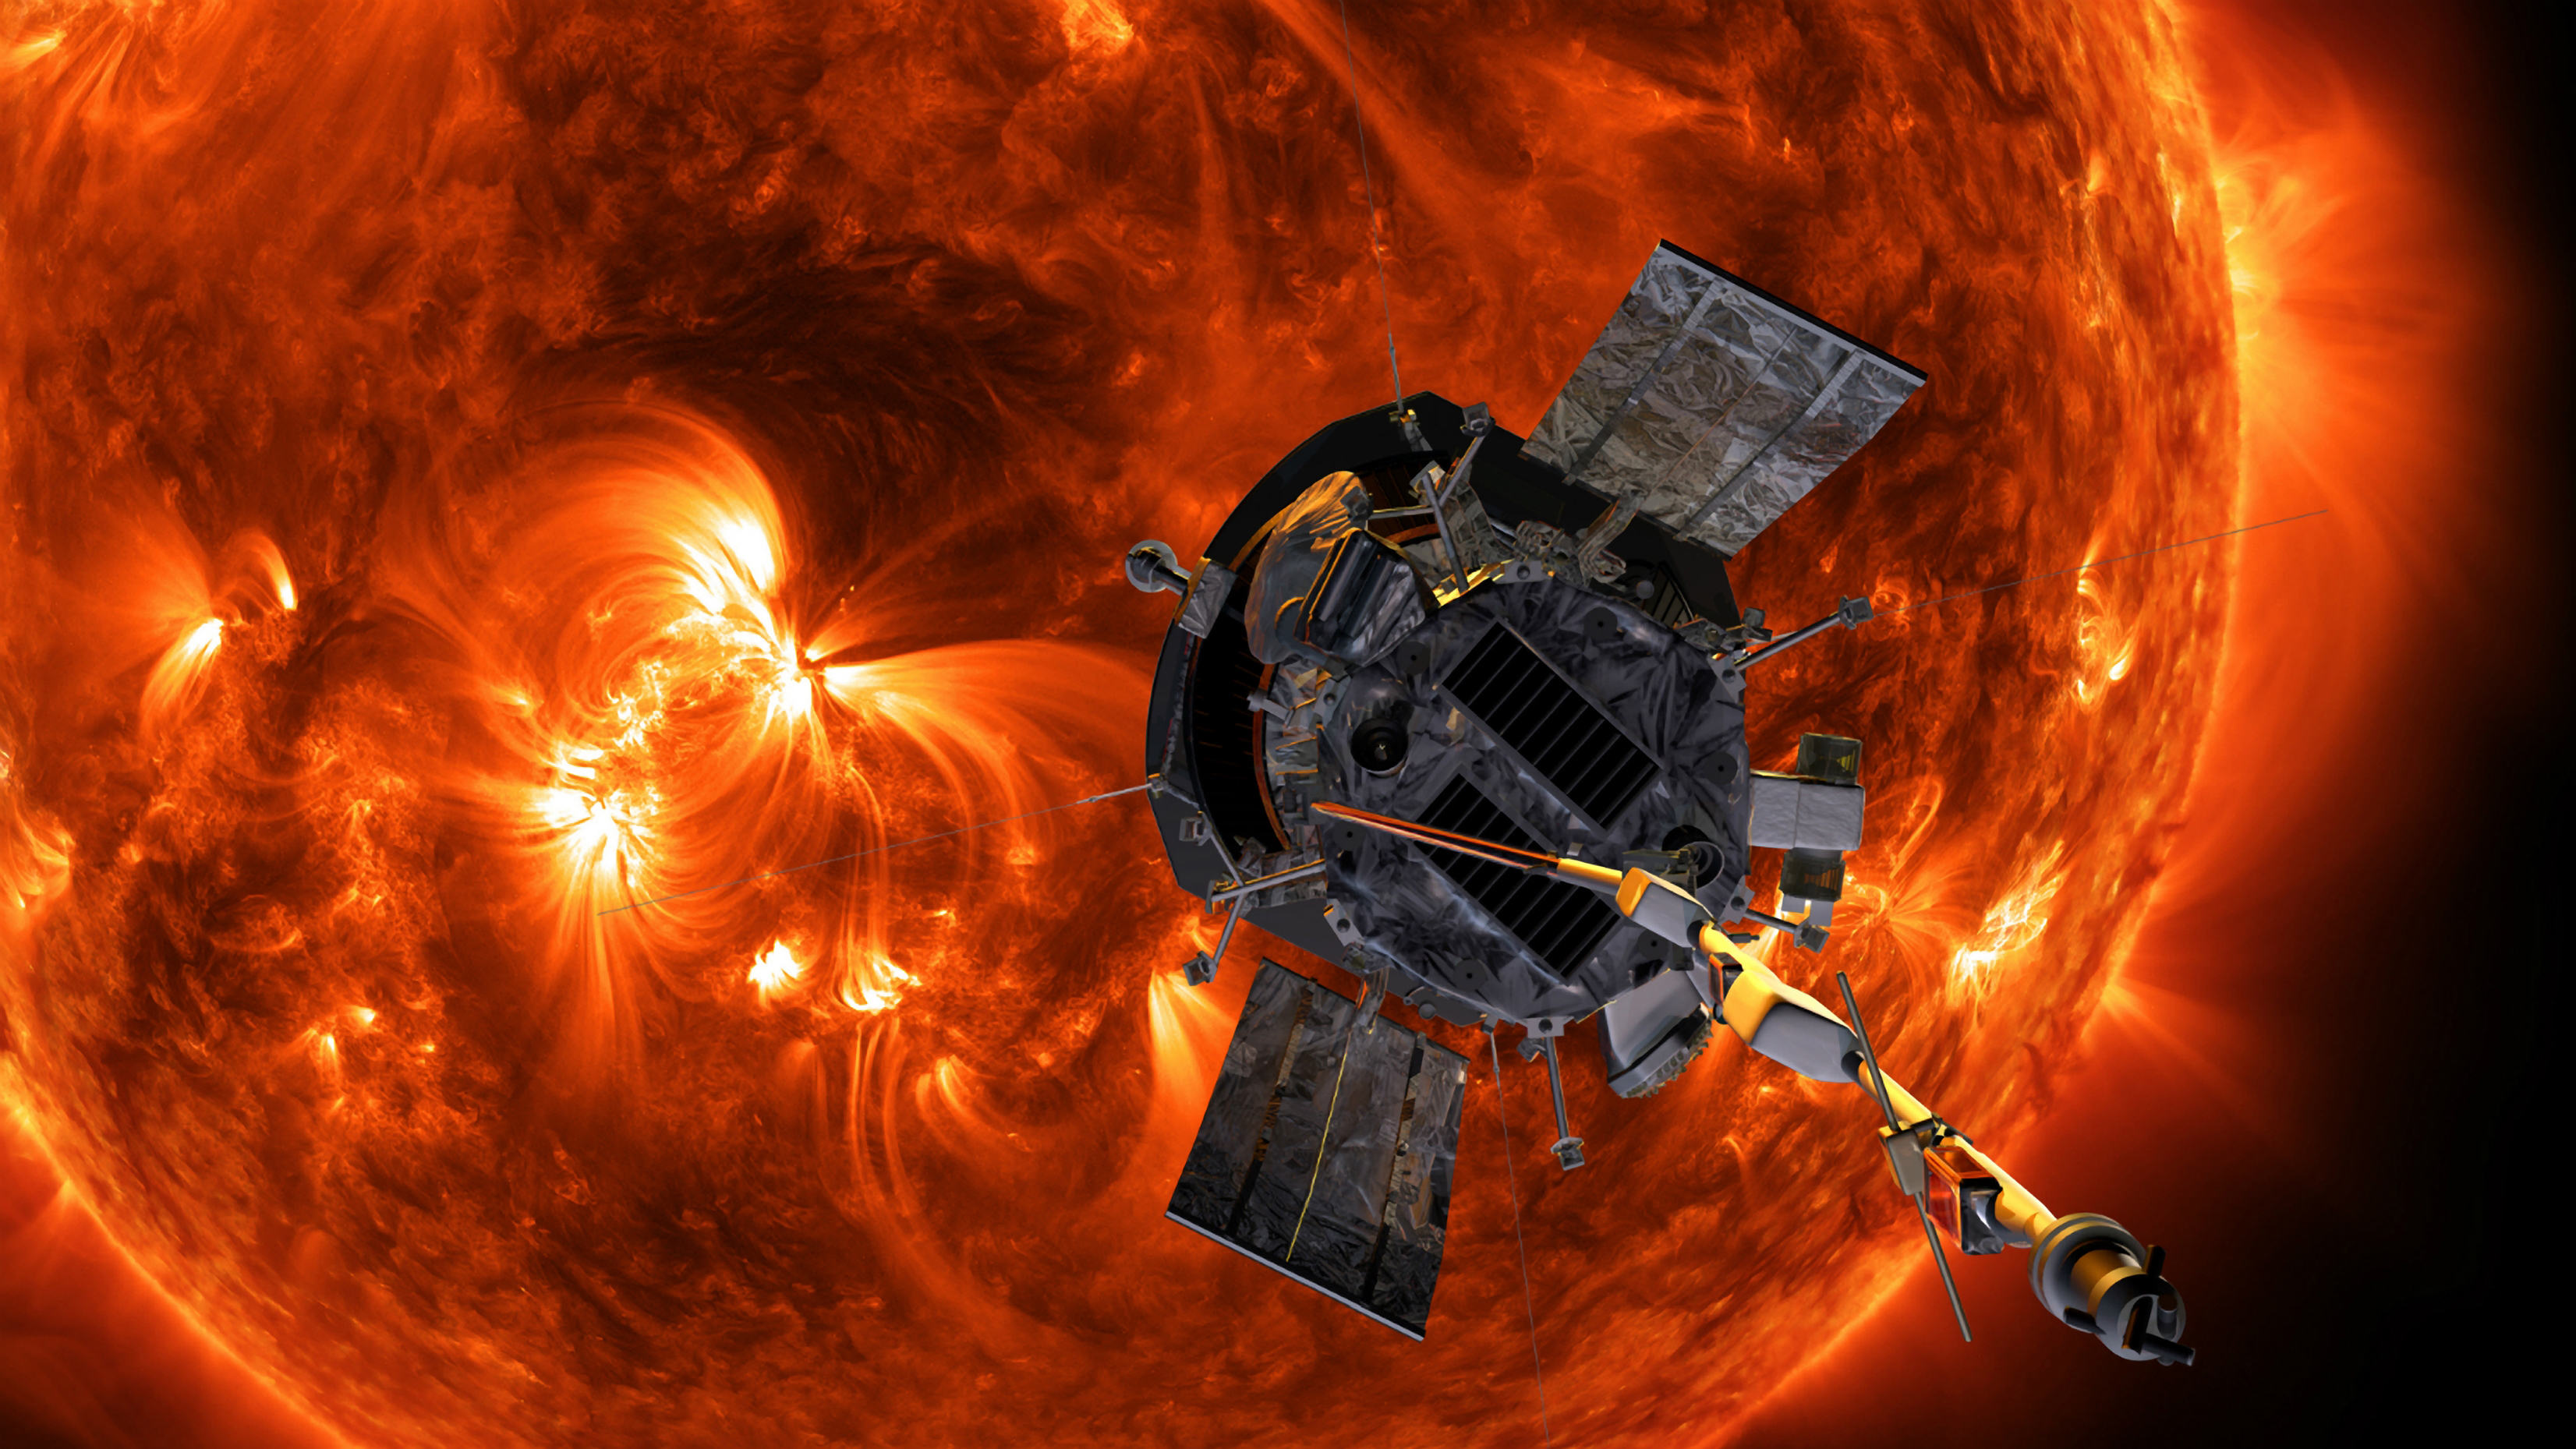 Am 24. Dezember wird die Parker Solar Probe der NASA mit der erstaunlichen Geschwindigkeit von 435.000 Meilen pro Stunde an der Sonne vorbeirasen – kein von Menschenhand geschaffenes Objekt wird sich jemals so schnell bewegt haben und auch nicht so nahe an unseren Stern herangekommen sein